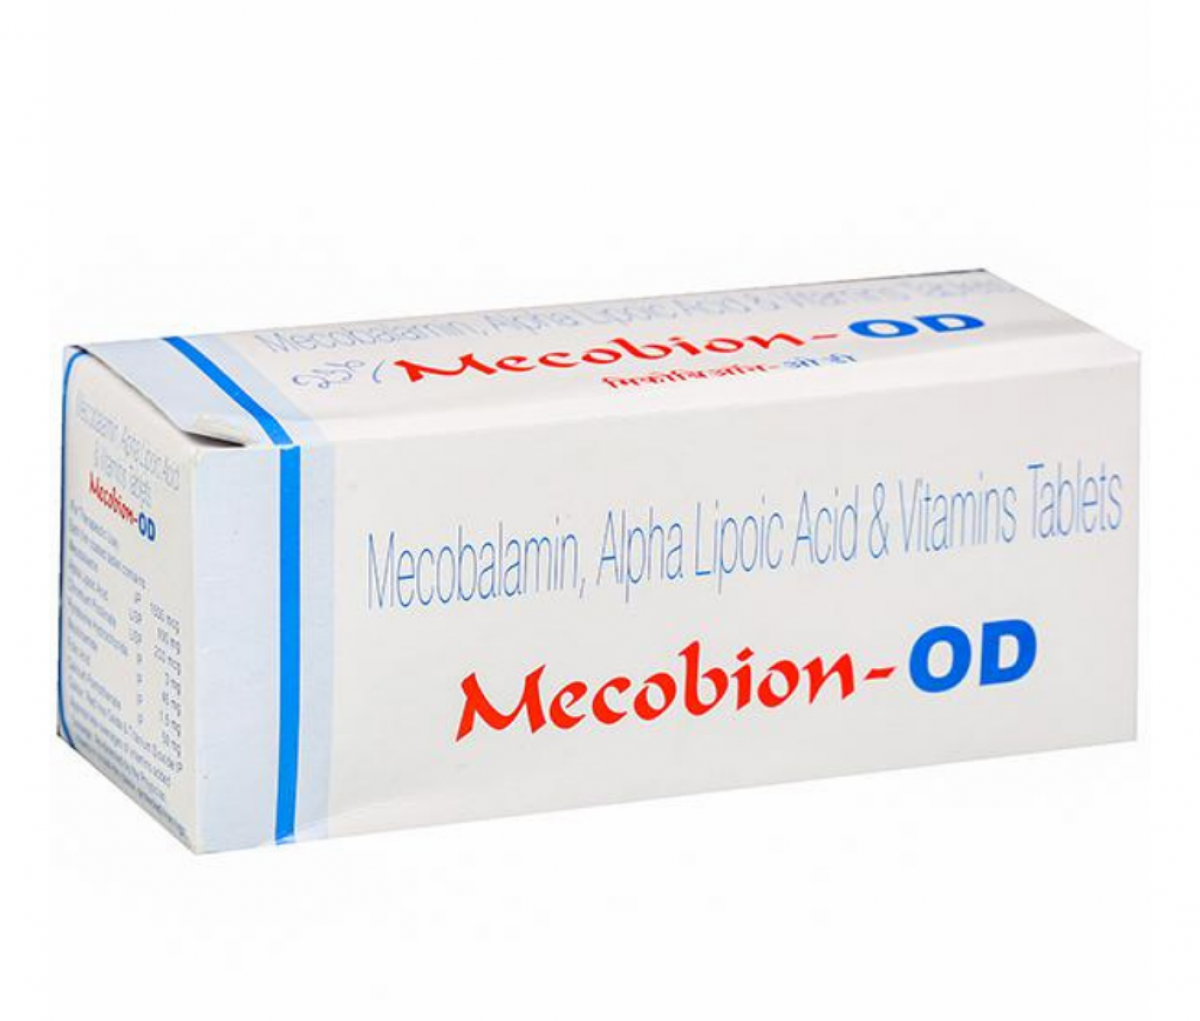 Mecobion OD Tablet